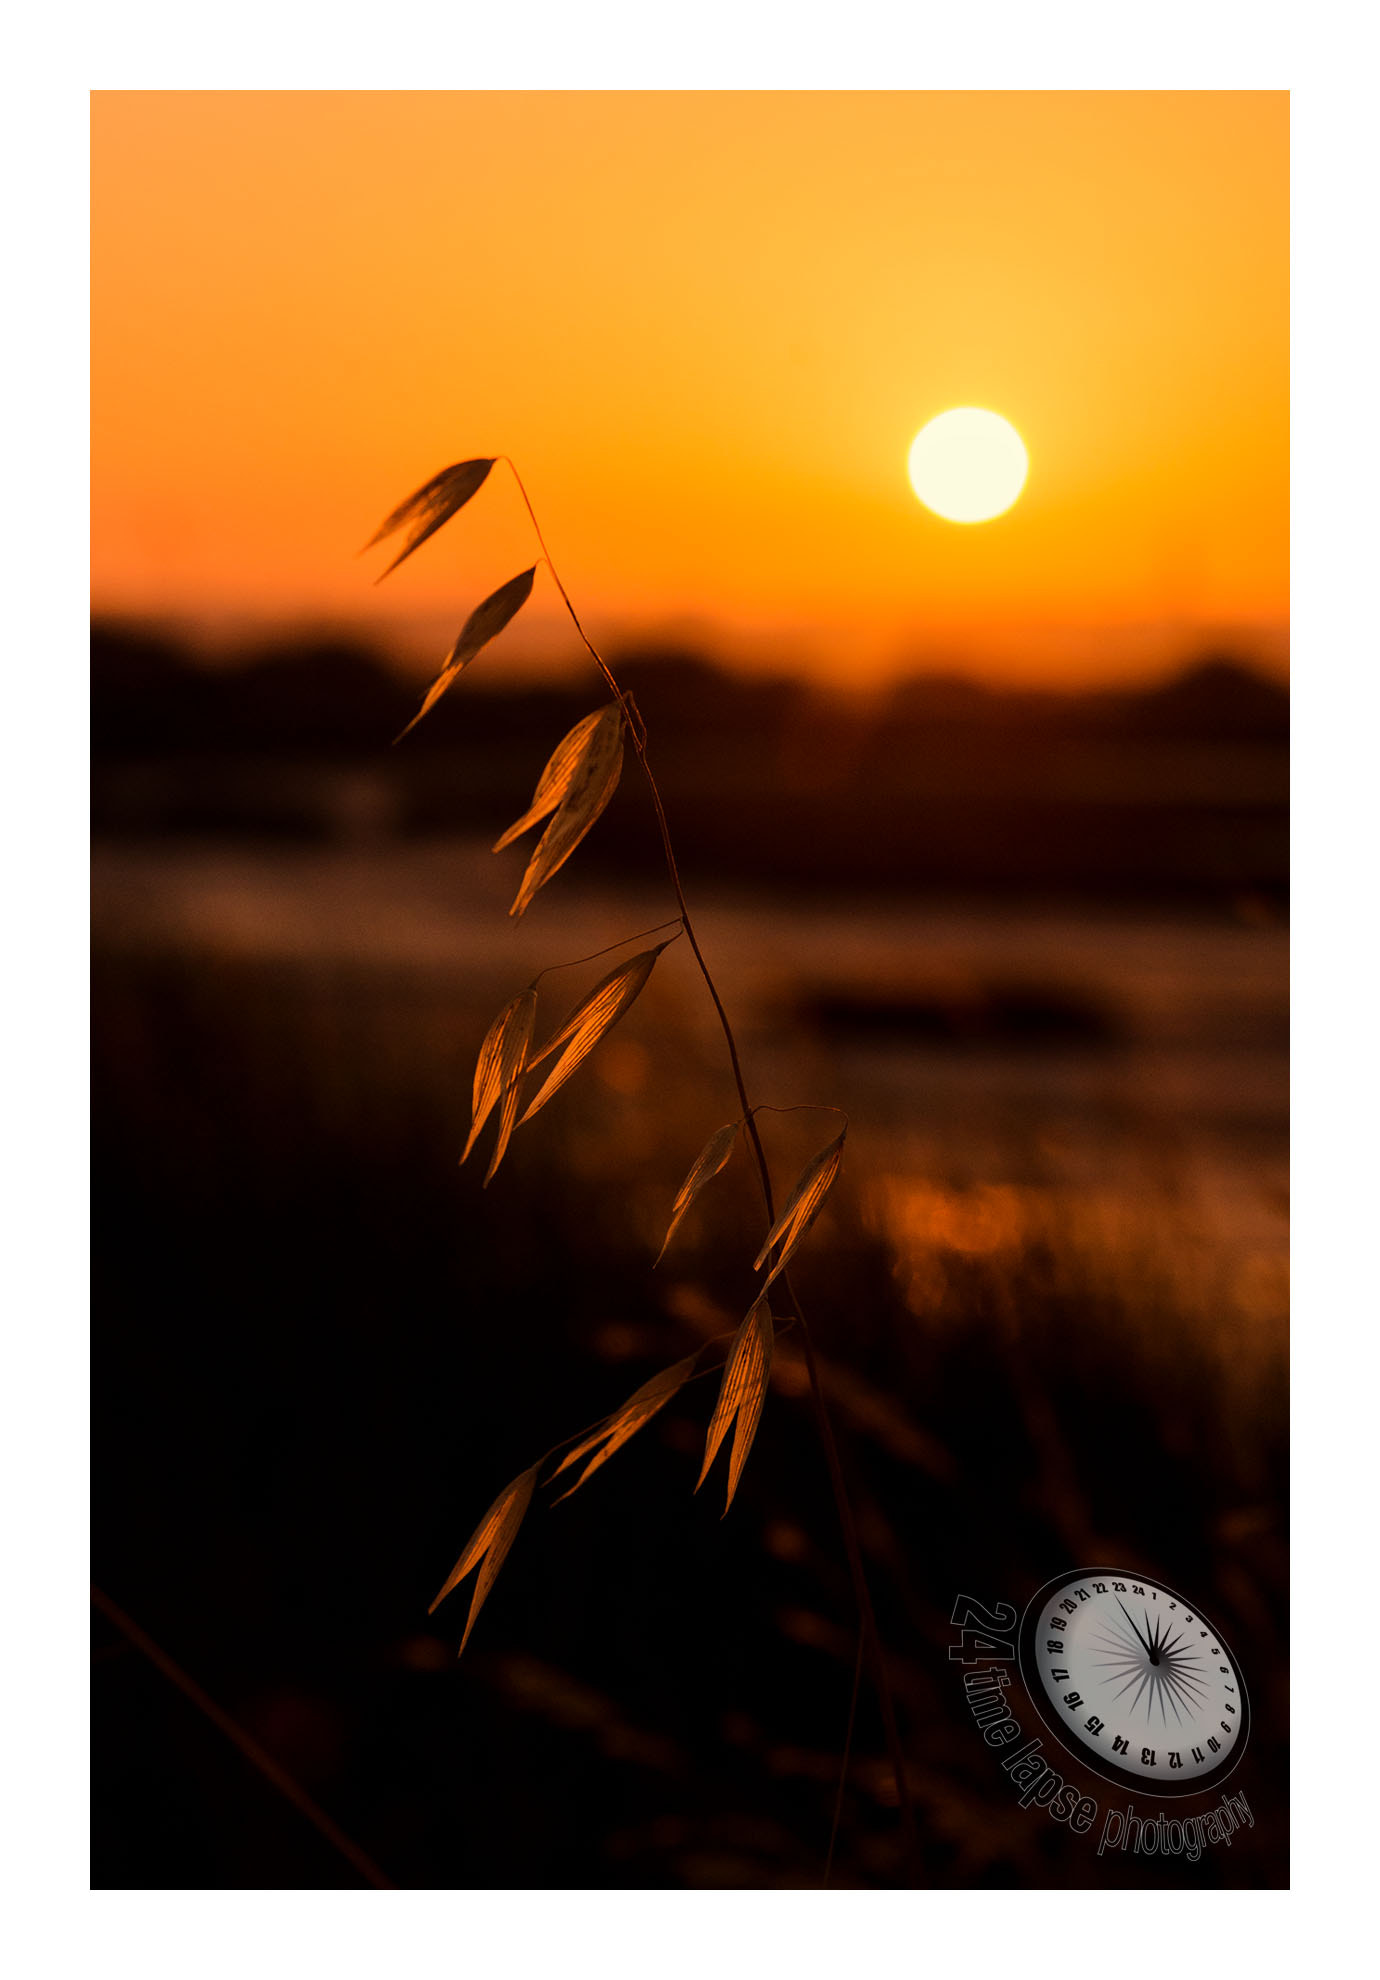 Nikon D7200 + Tamron AF 28-75mm F2.8 XR Di LD Aspherical (IF) sample photo. Sunset photography